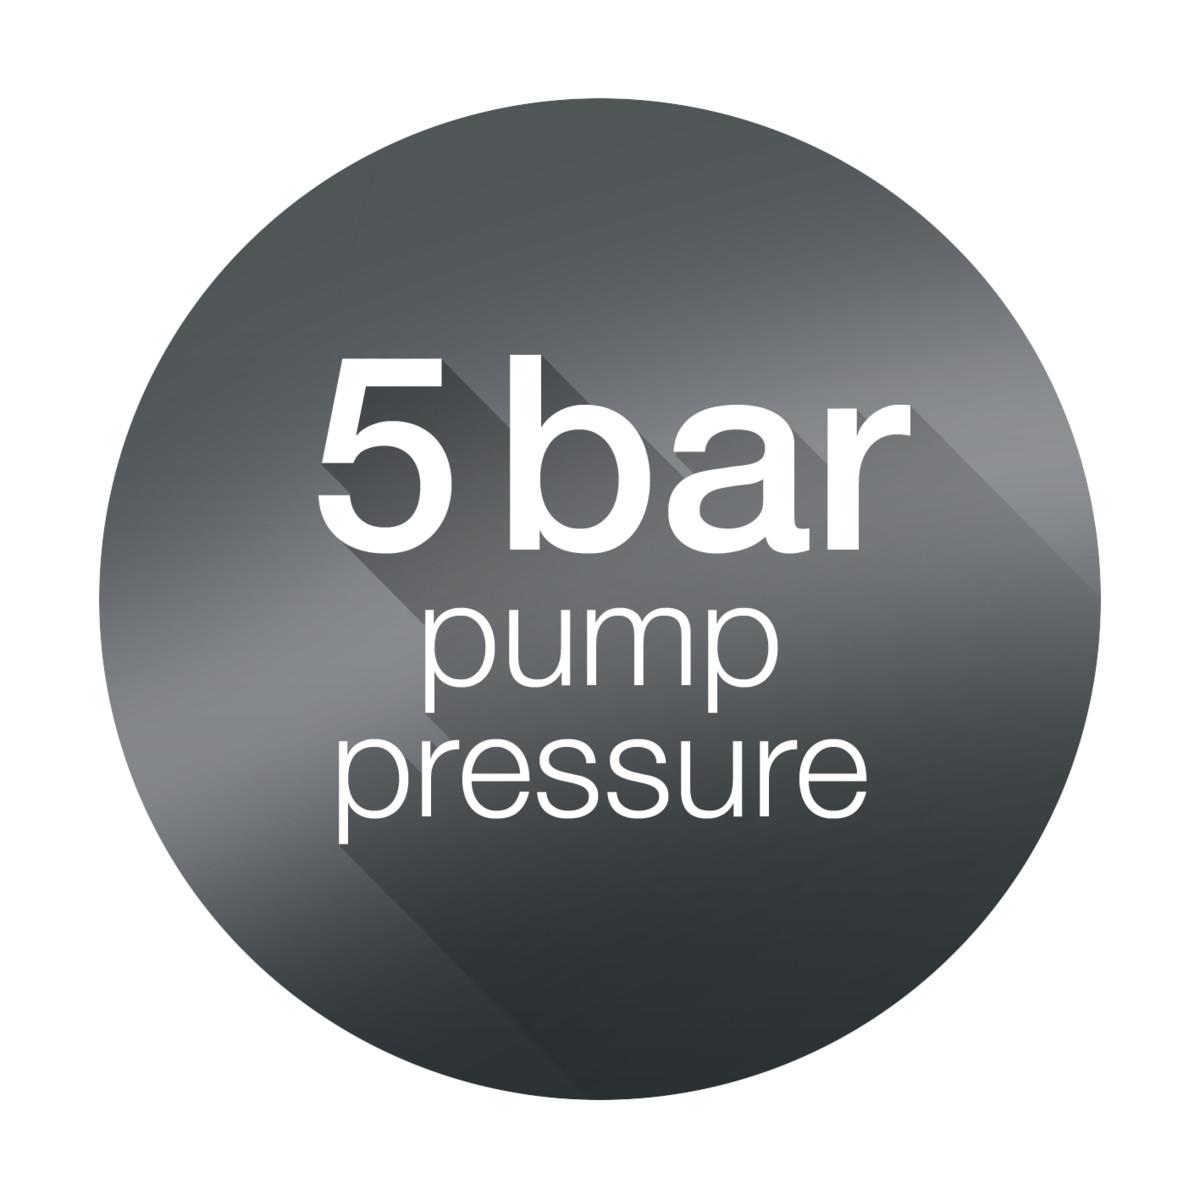 ../../../../../Downloads/ICON_pump-pressure-5-bar.jpg